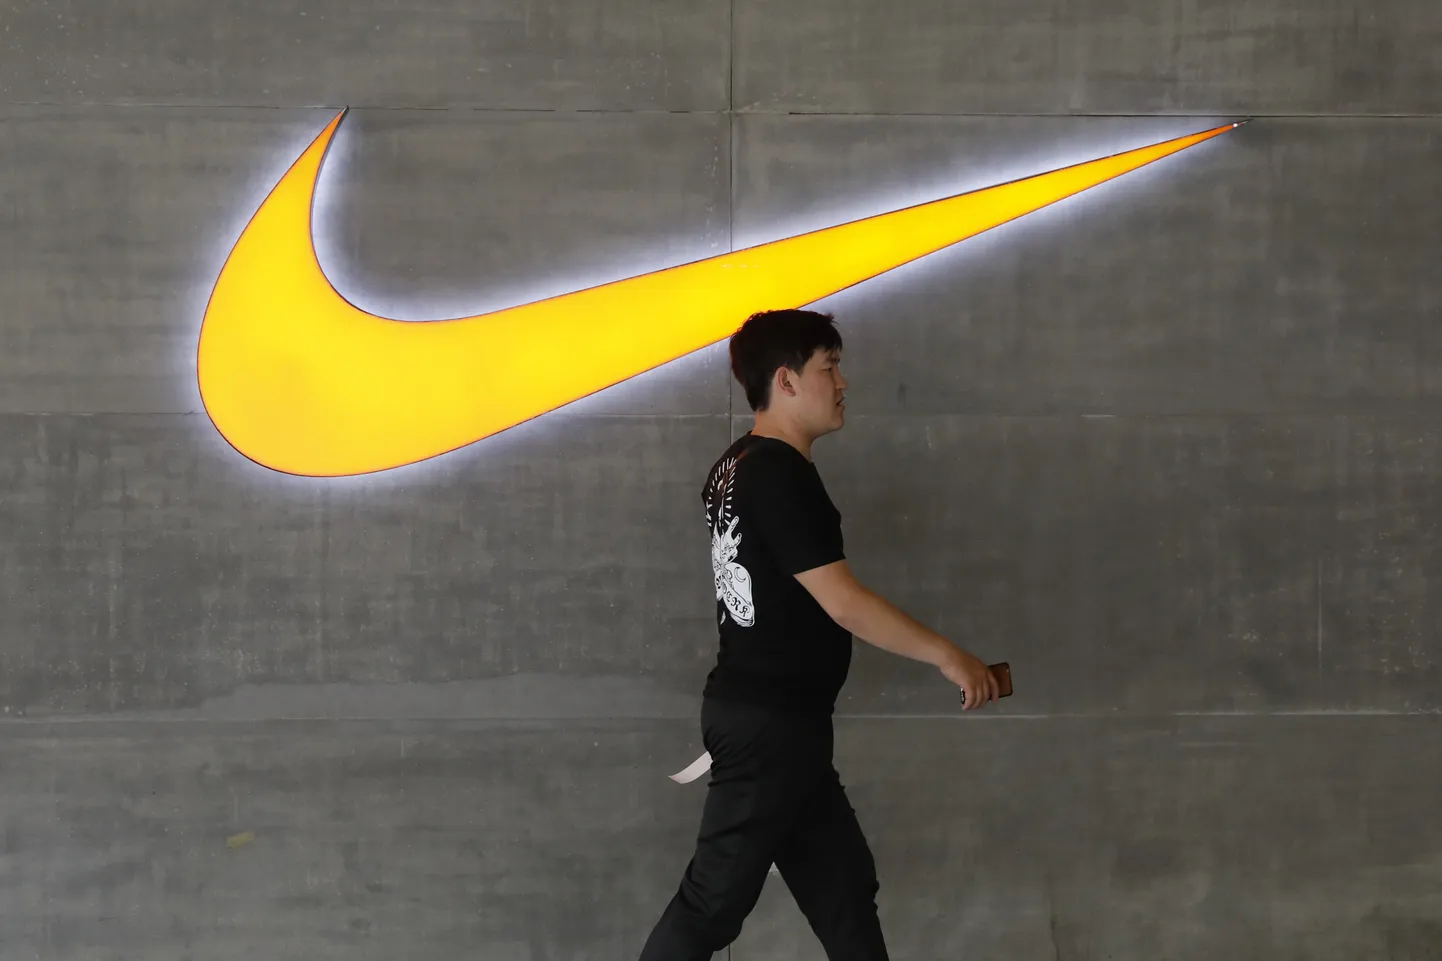 Hiina mees kõndimas mööda Nike poest Pekingis.